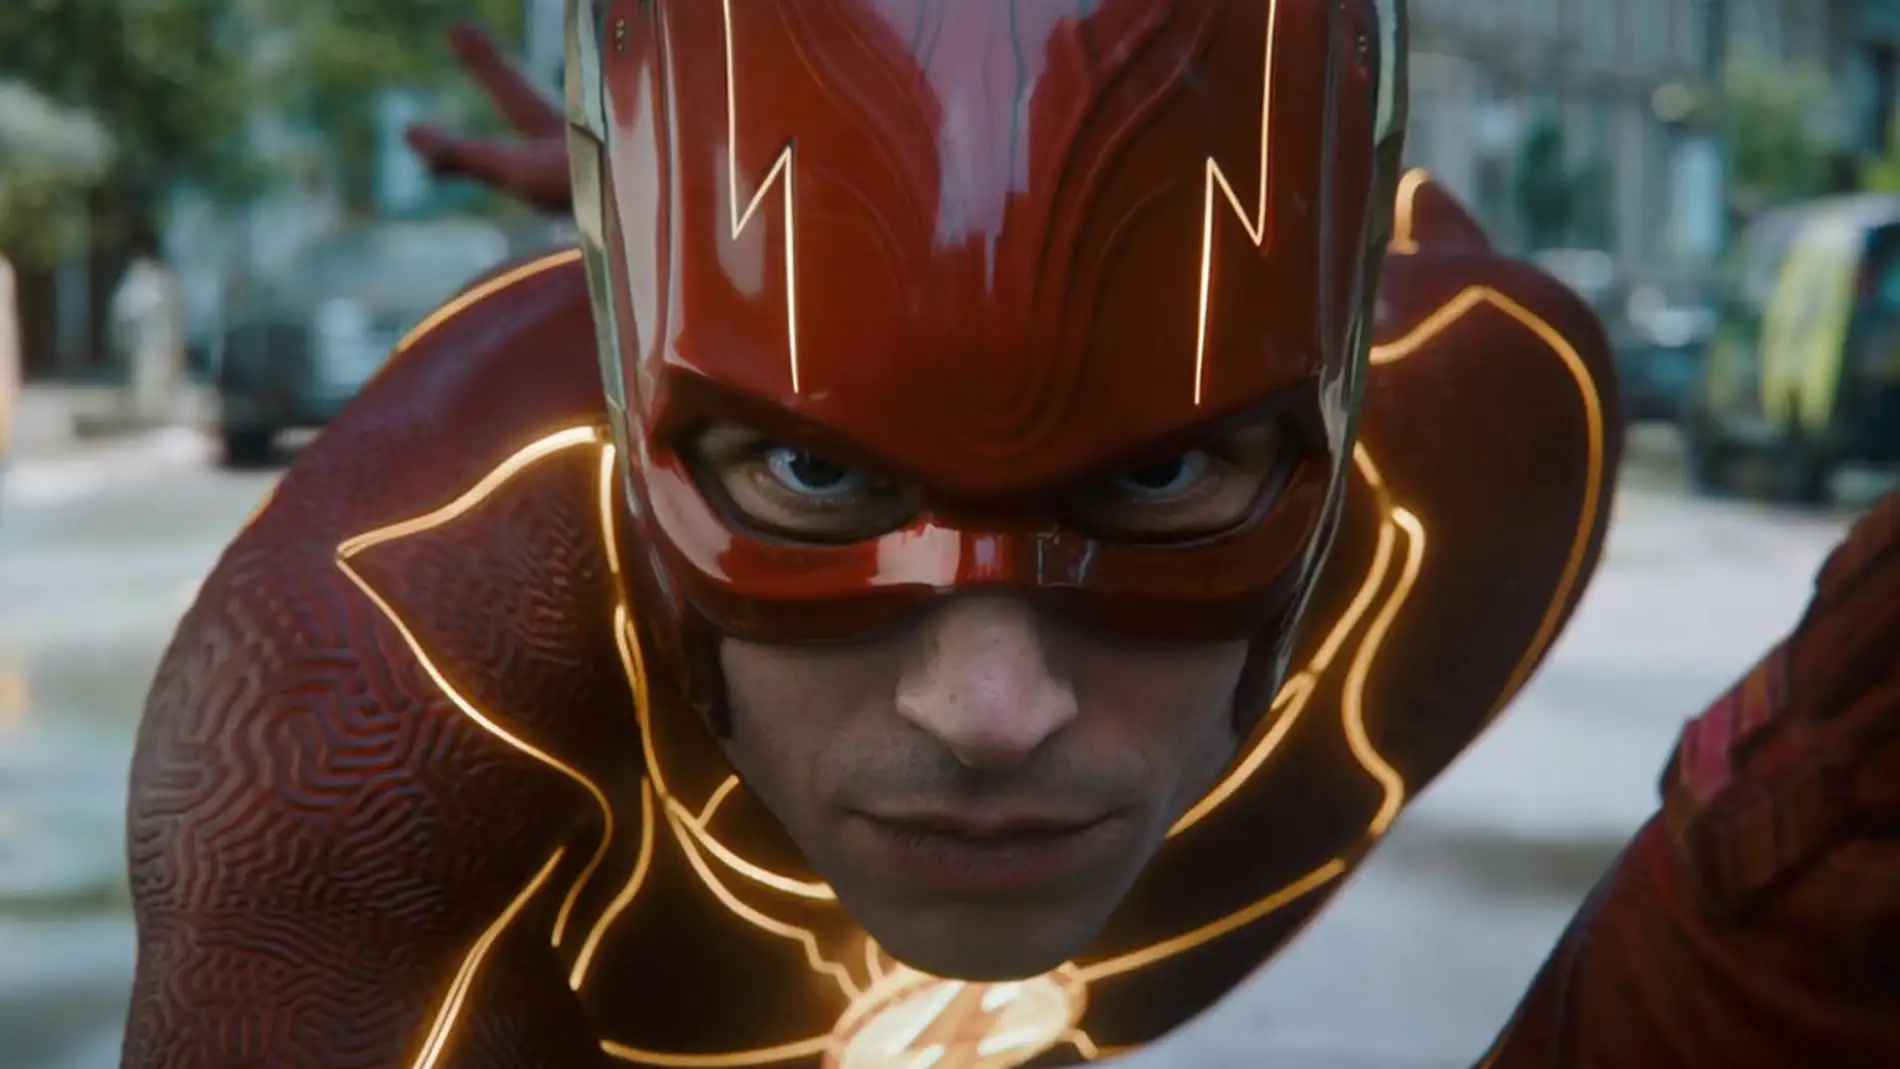 Ezra Miller en 'The Flash'